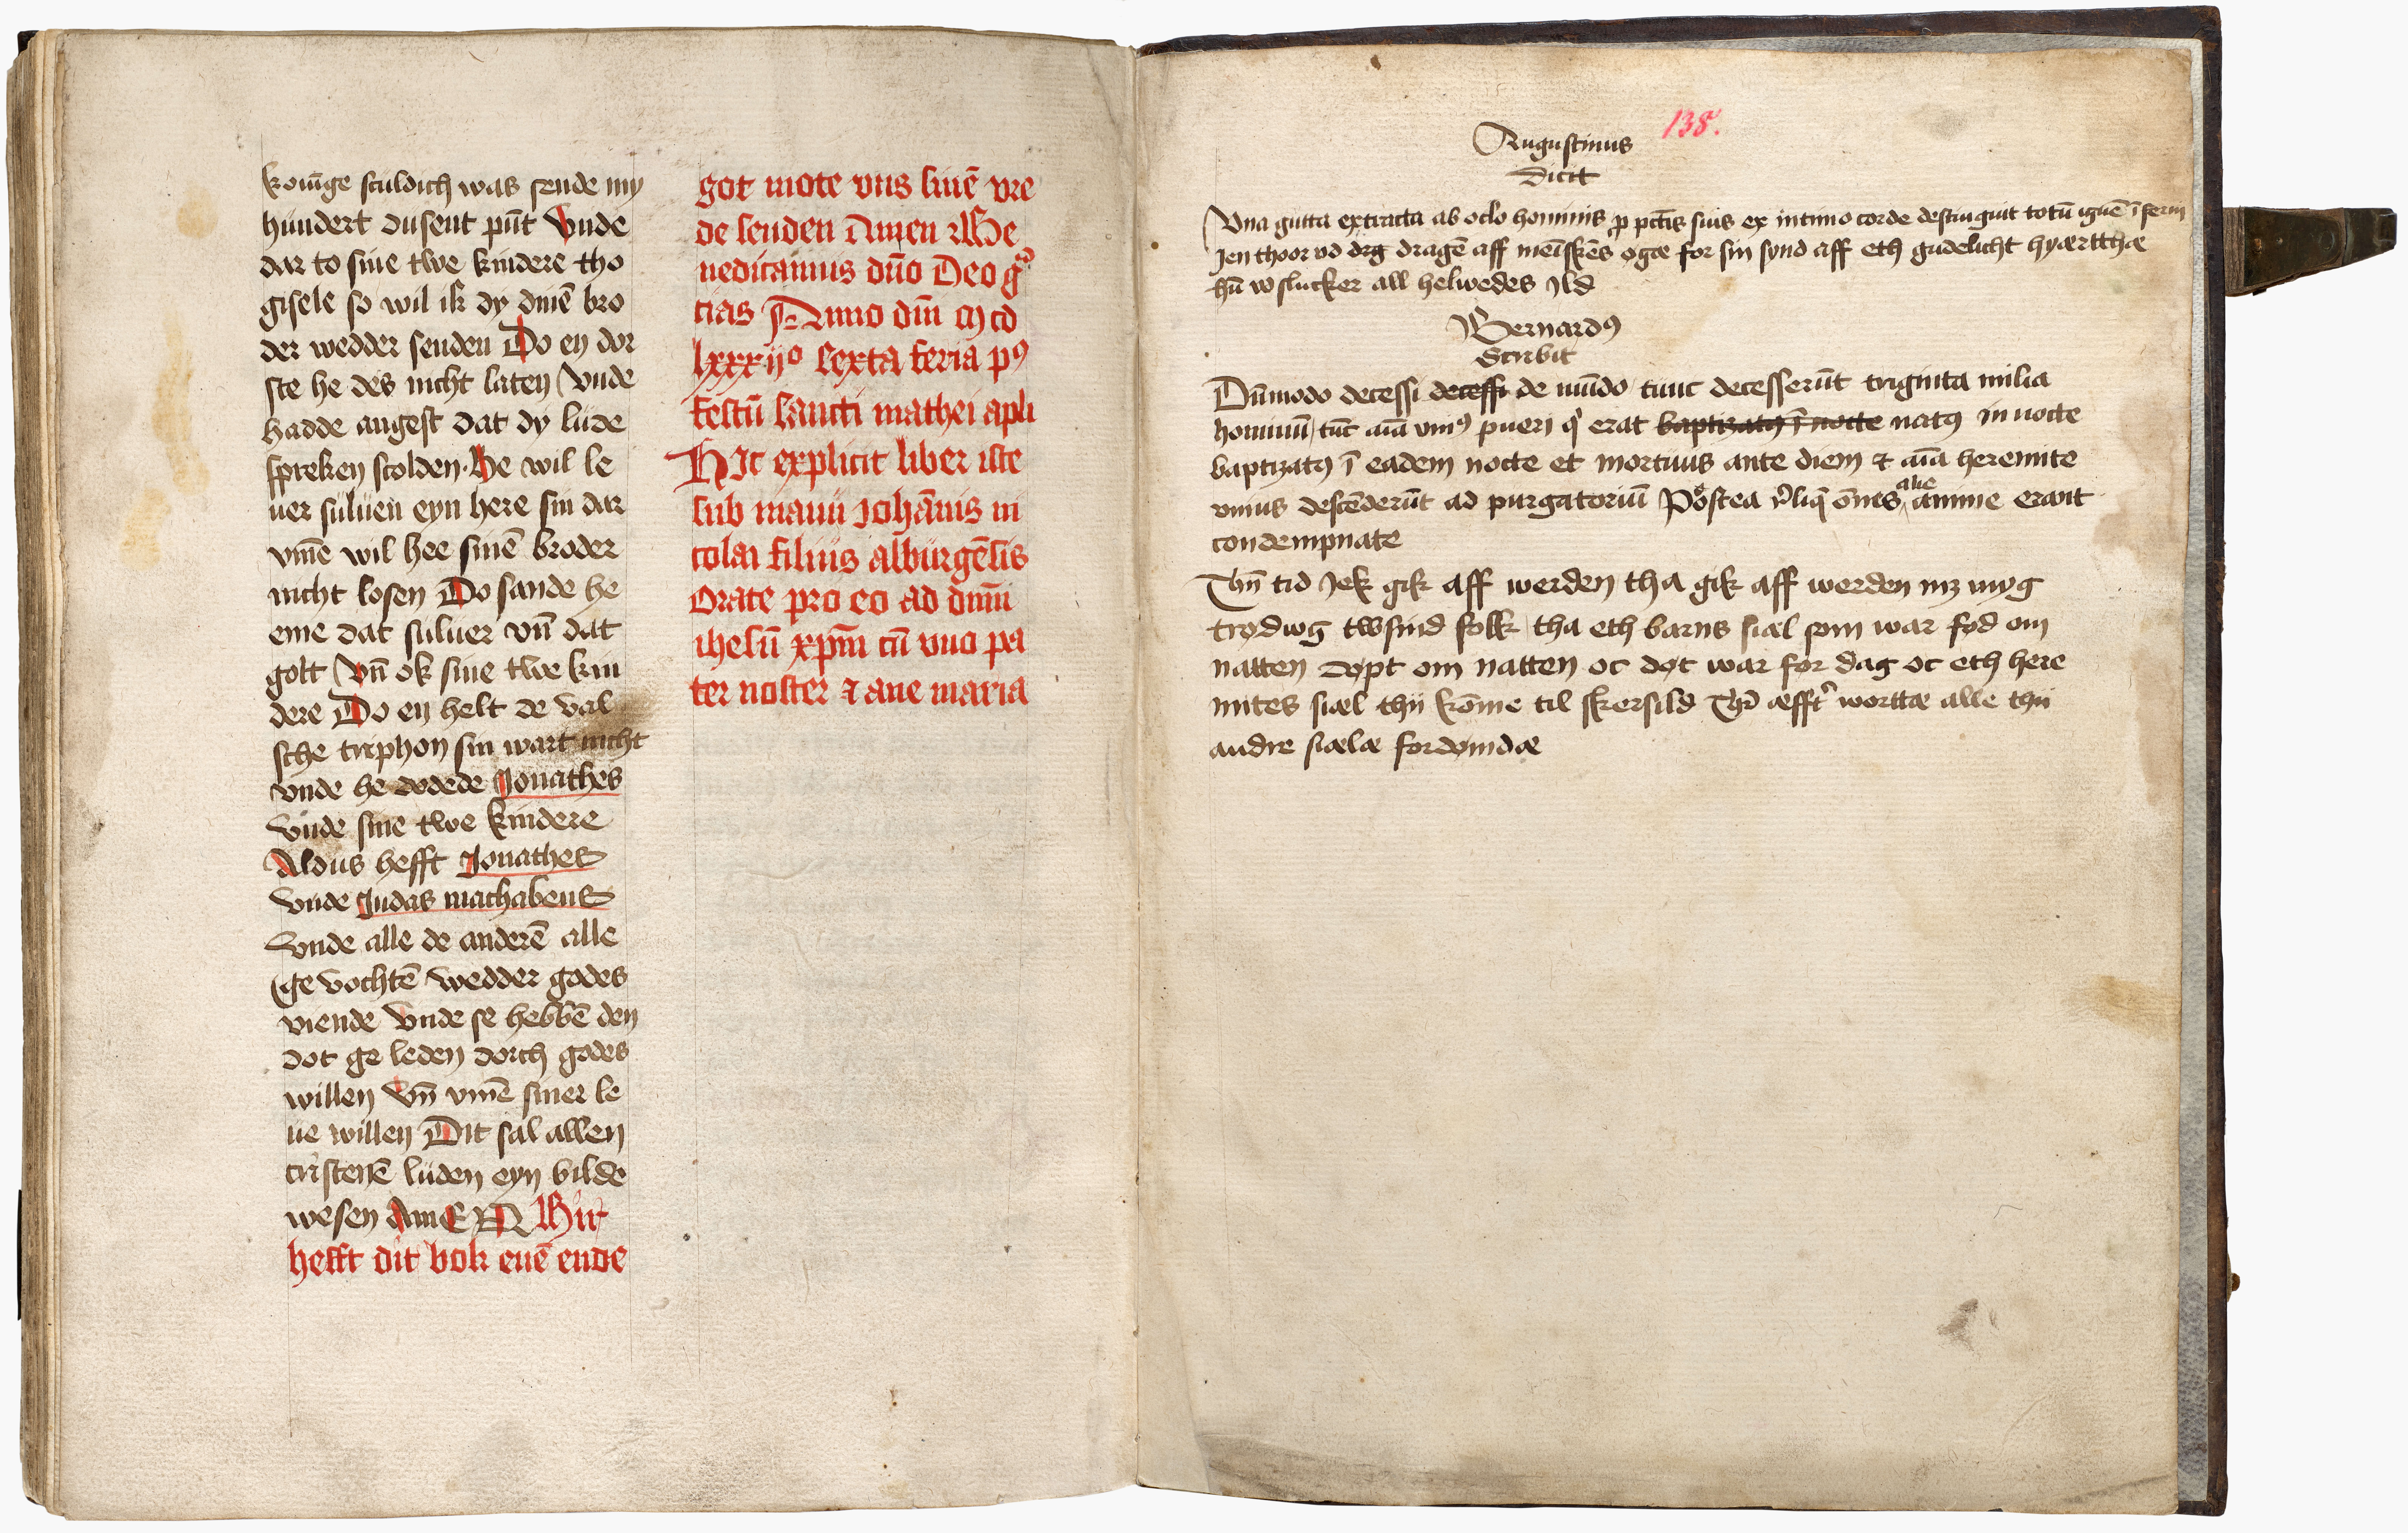 Two manuscript pages